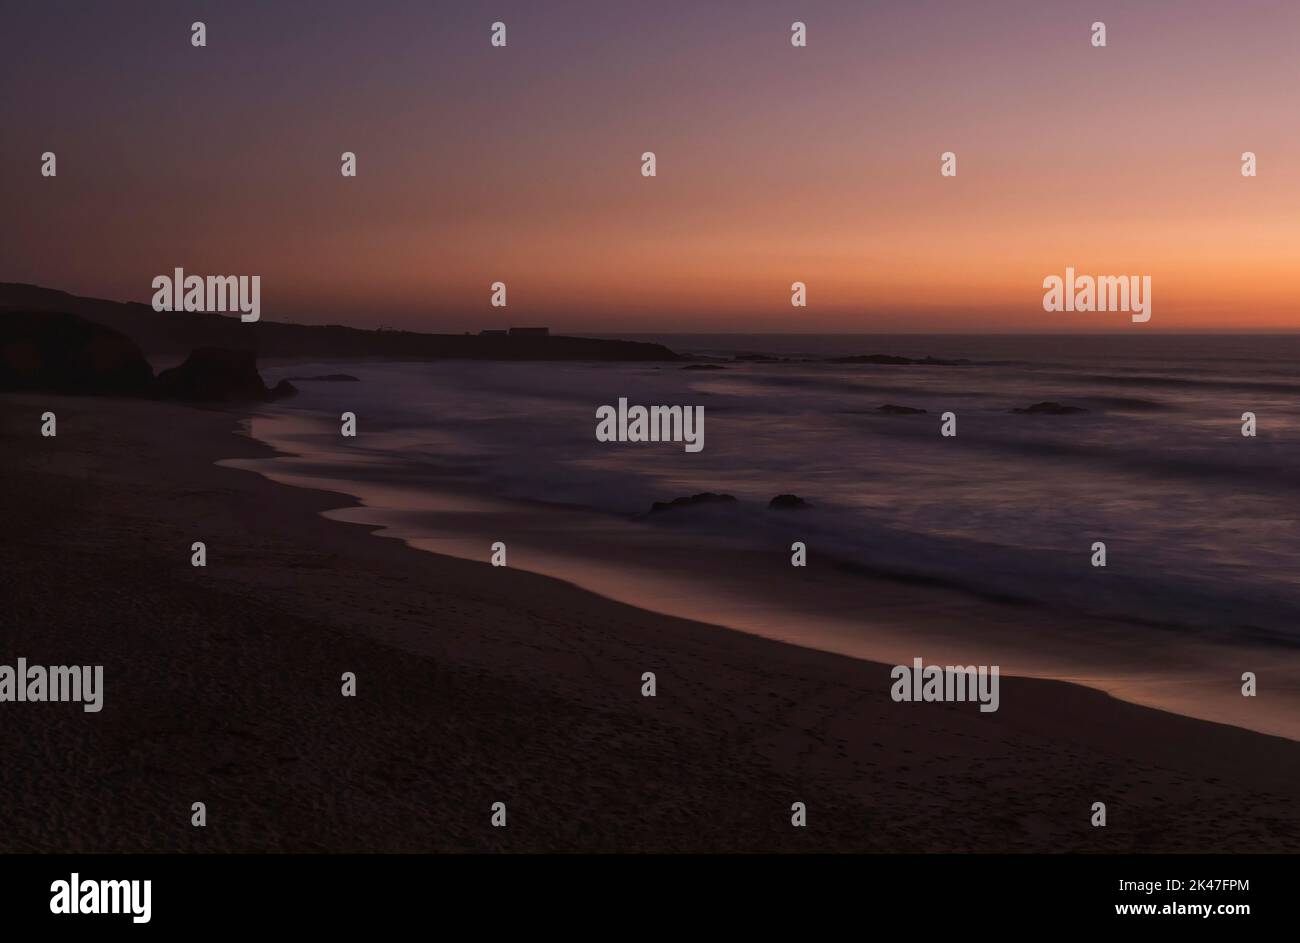 Geheimnisvolle Langzeitansicht des Sandstrandes Praia Grande de Almograve mit verschwommenen Wellen in rosa orange und violettem Licht. Blaue Stunde nach Sonnenuntergang Stockfoto